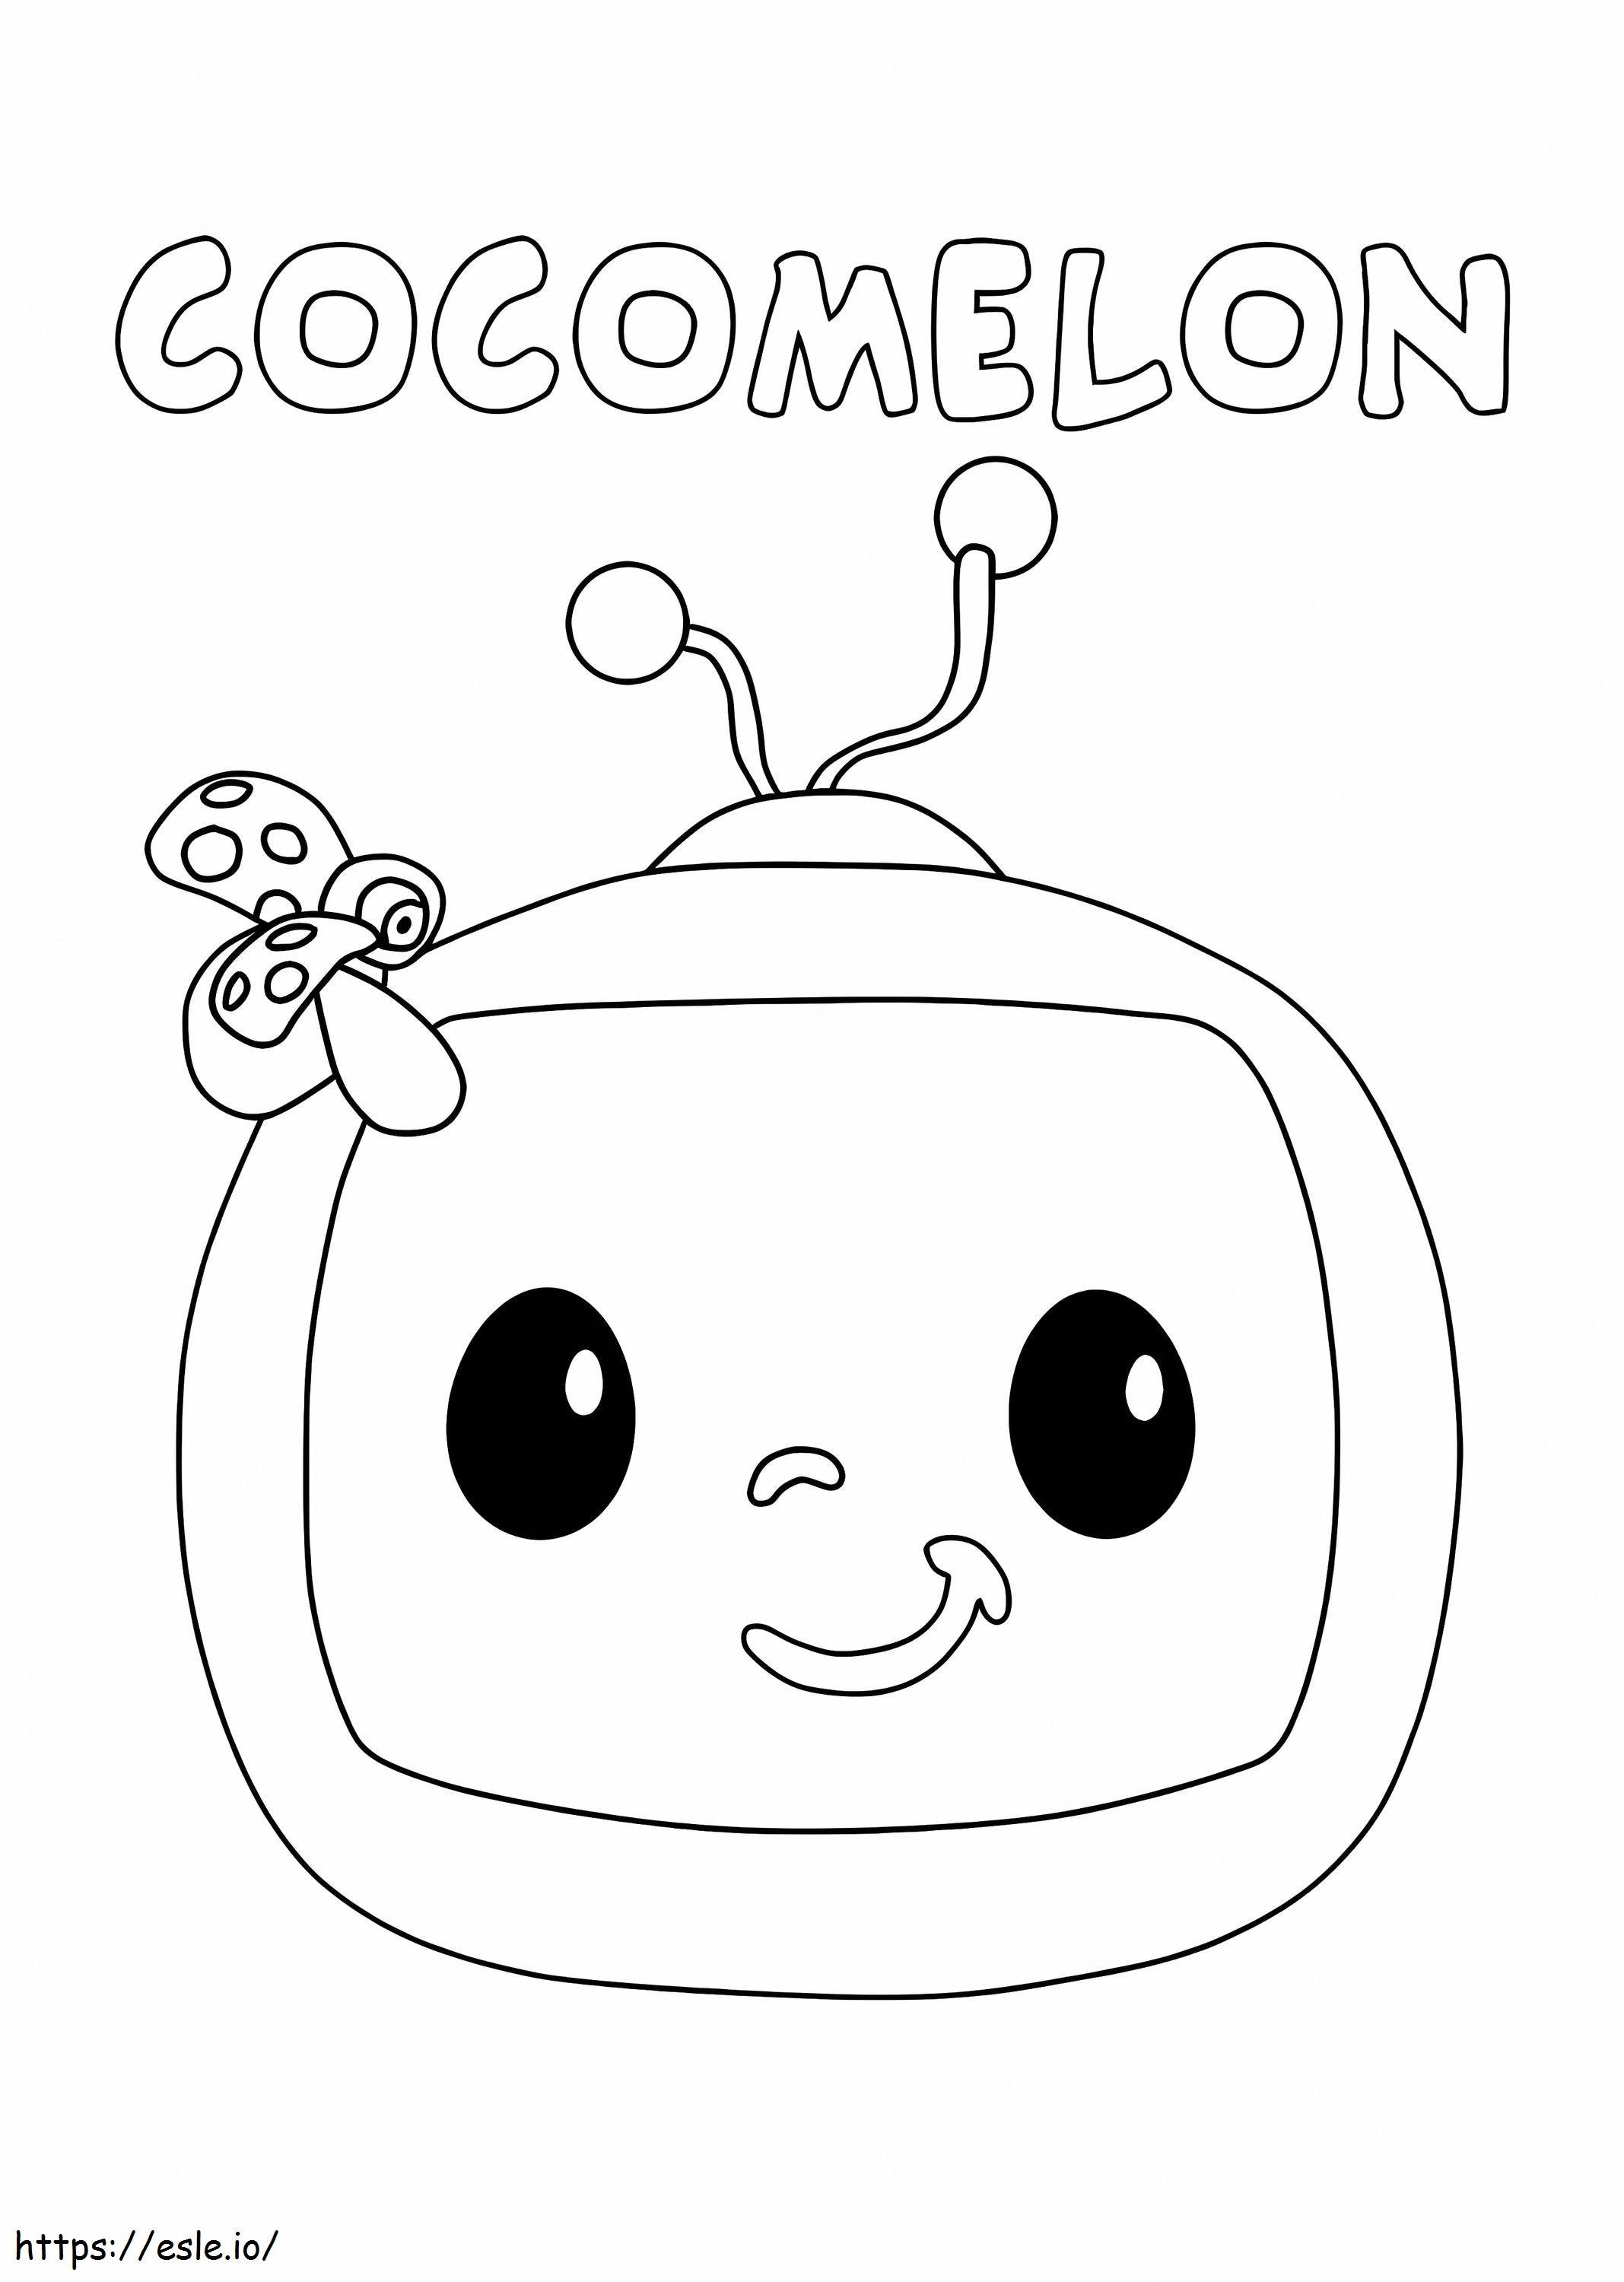 Cocomelon-logo 1 kleurplaat kleurplaat